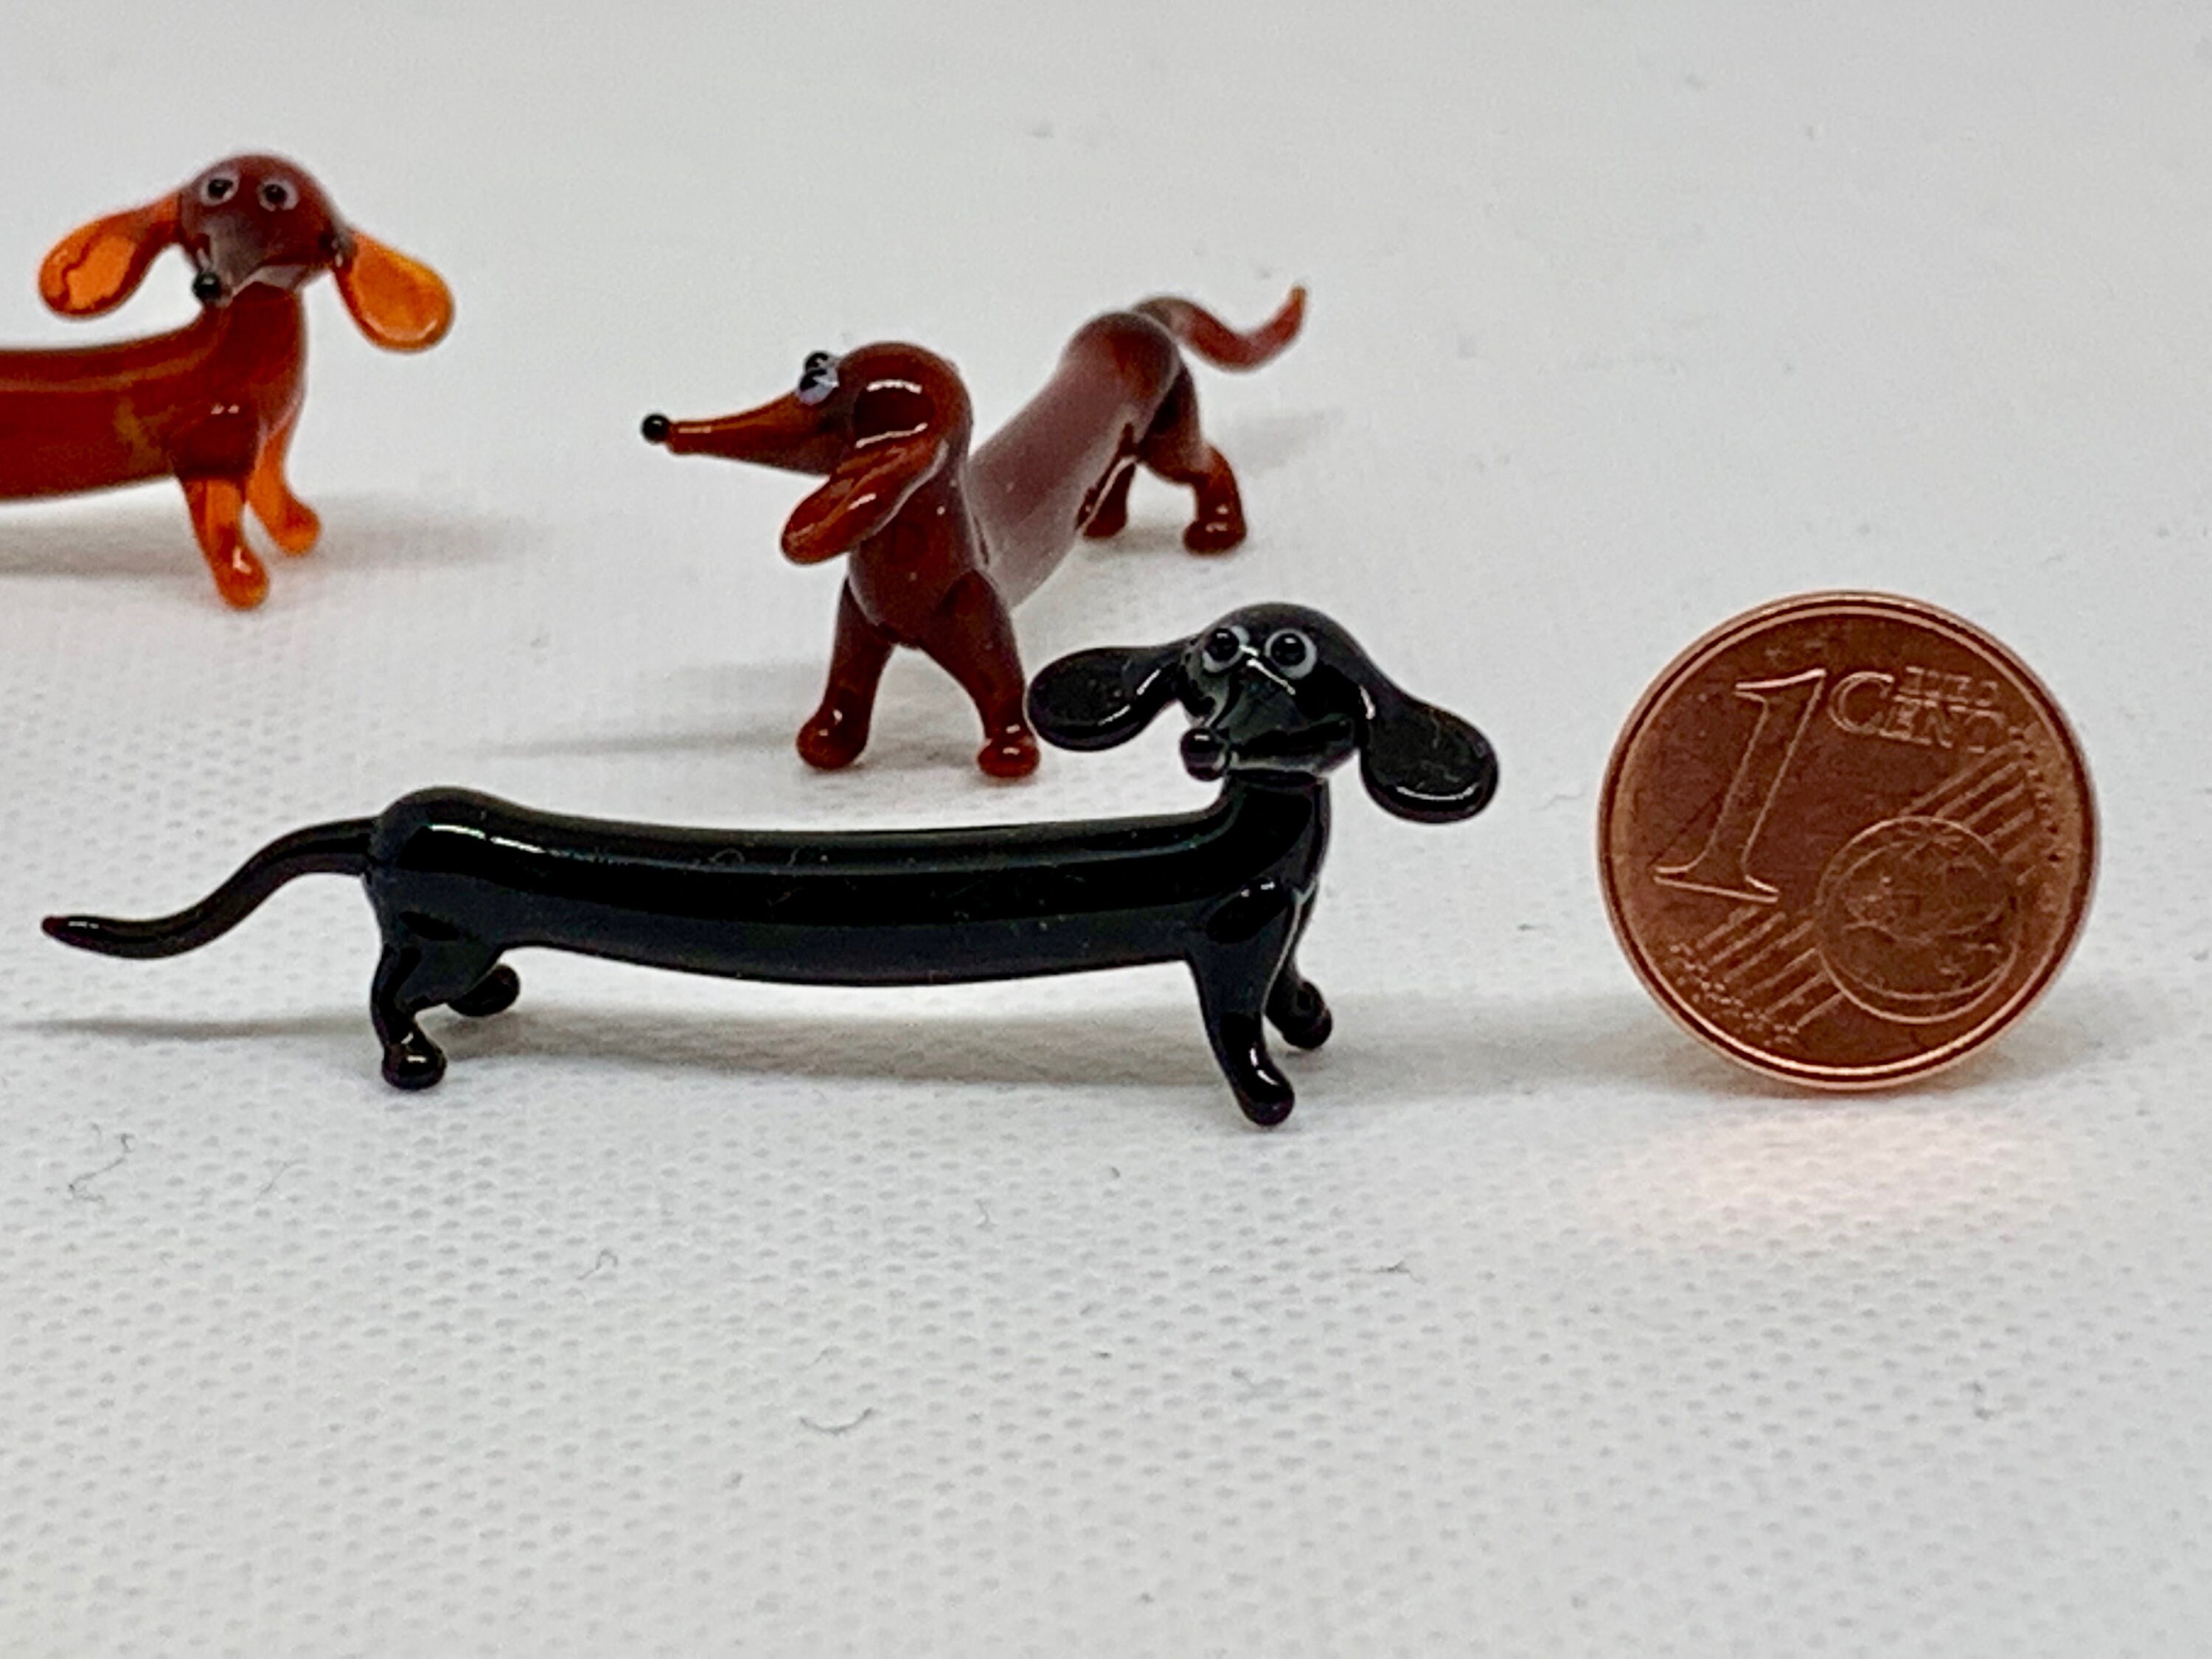 Vintage Dachshund Miniature Doxie Wiener Dog Blown Glass Figurine 2 3/4 x  5/8